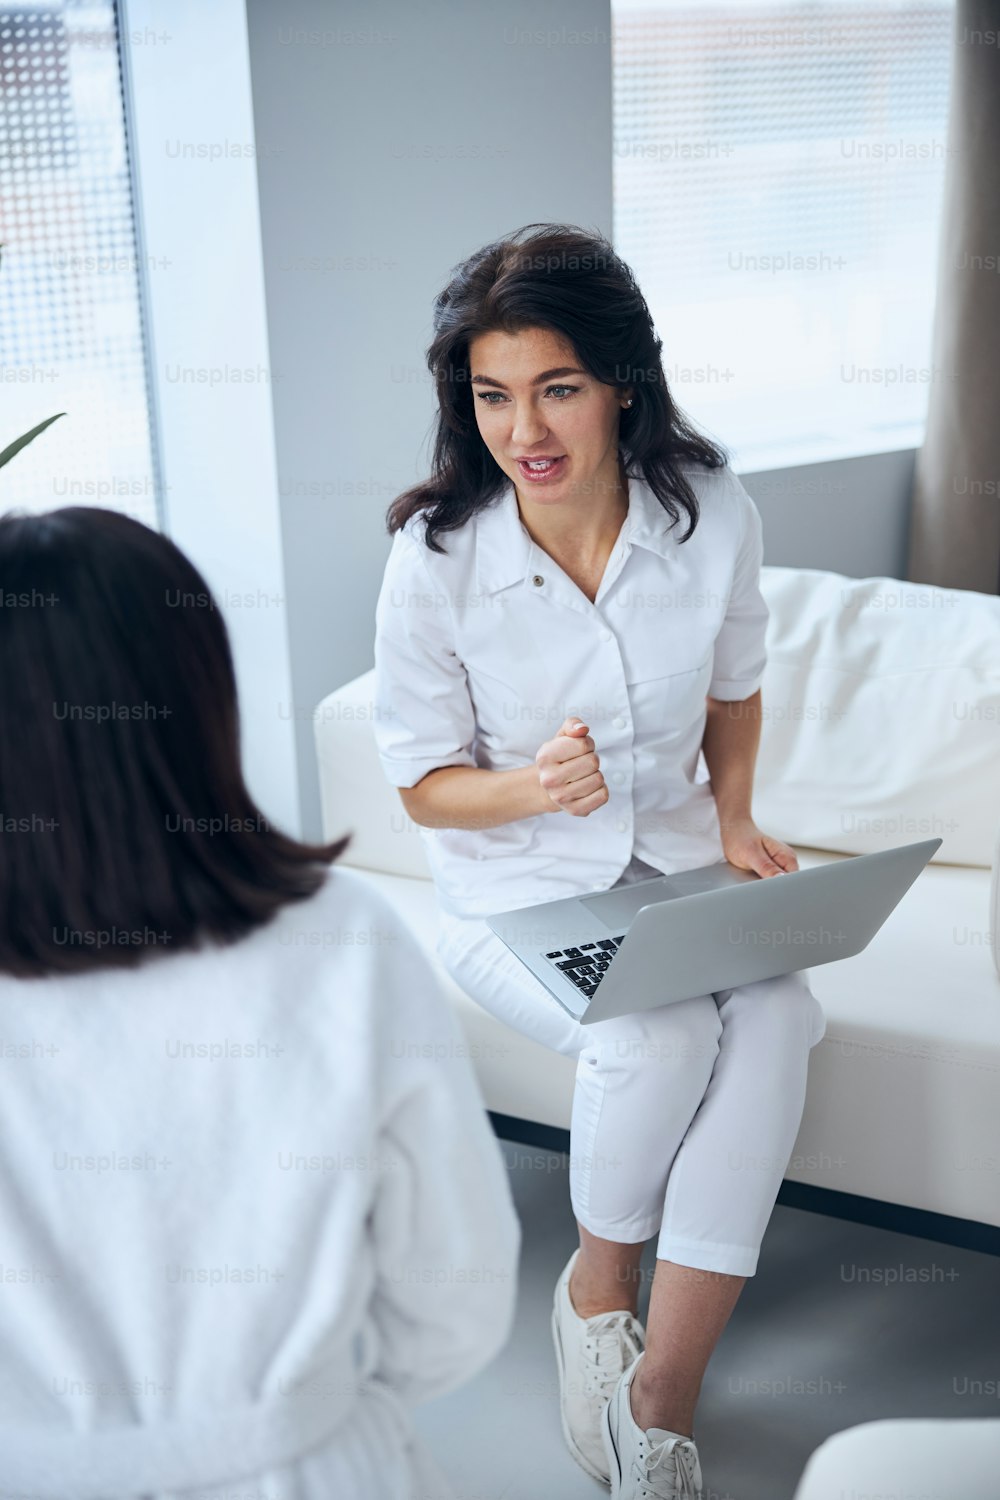 膝の上にノートパソコンを置き、診察中に女性にインタビューする医療従事者